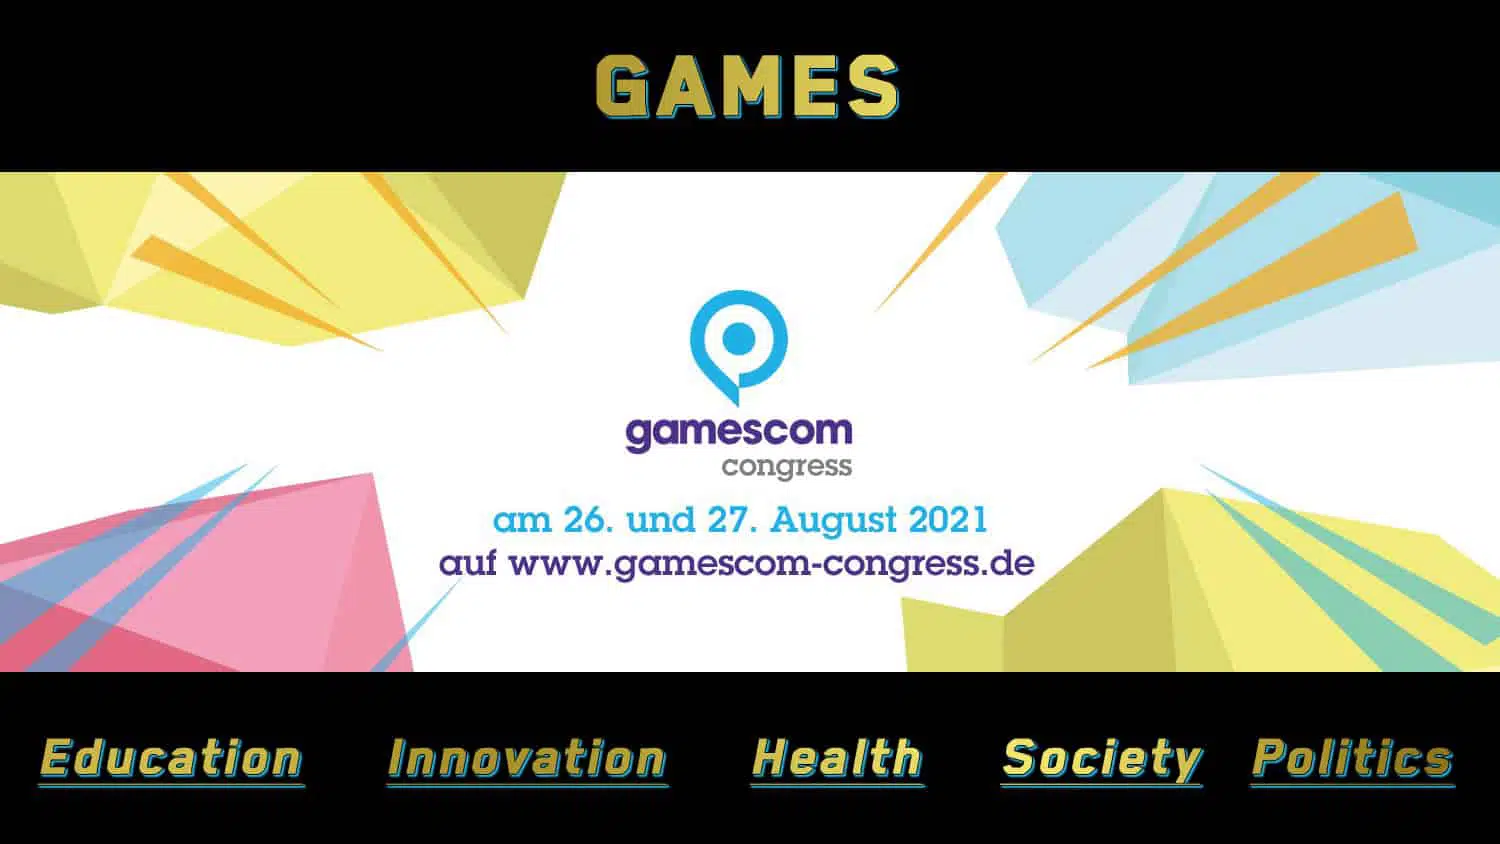 gamescom congress 2021